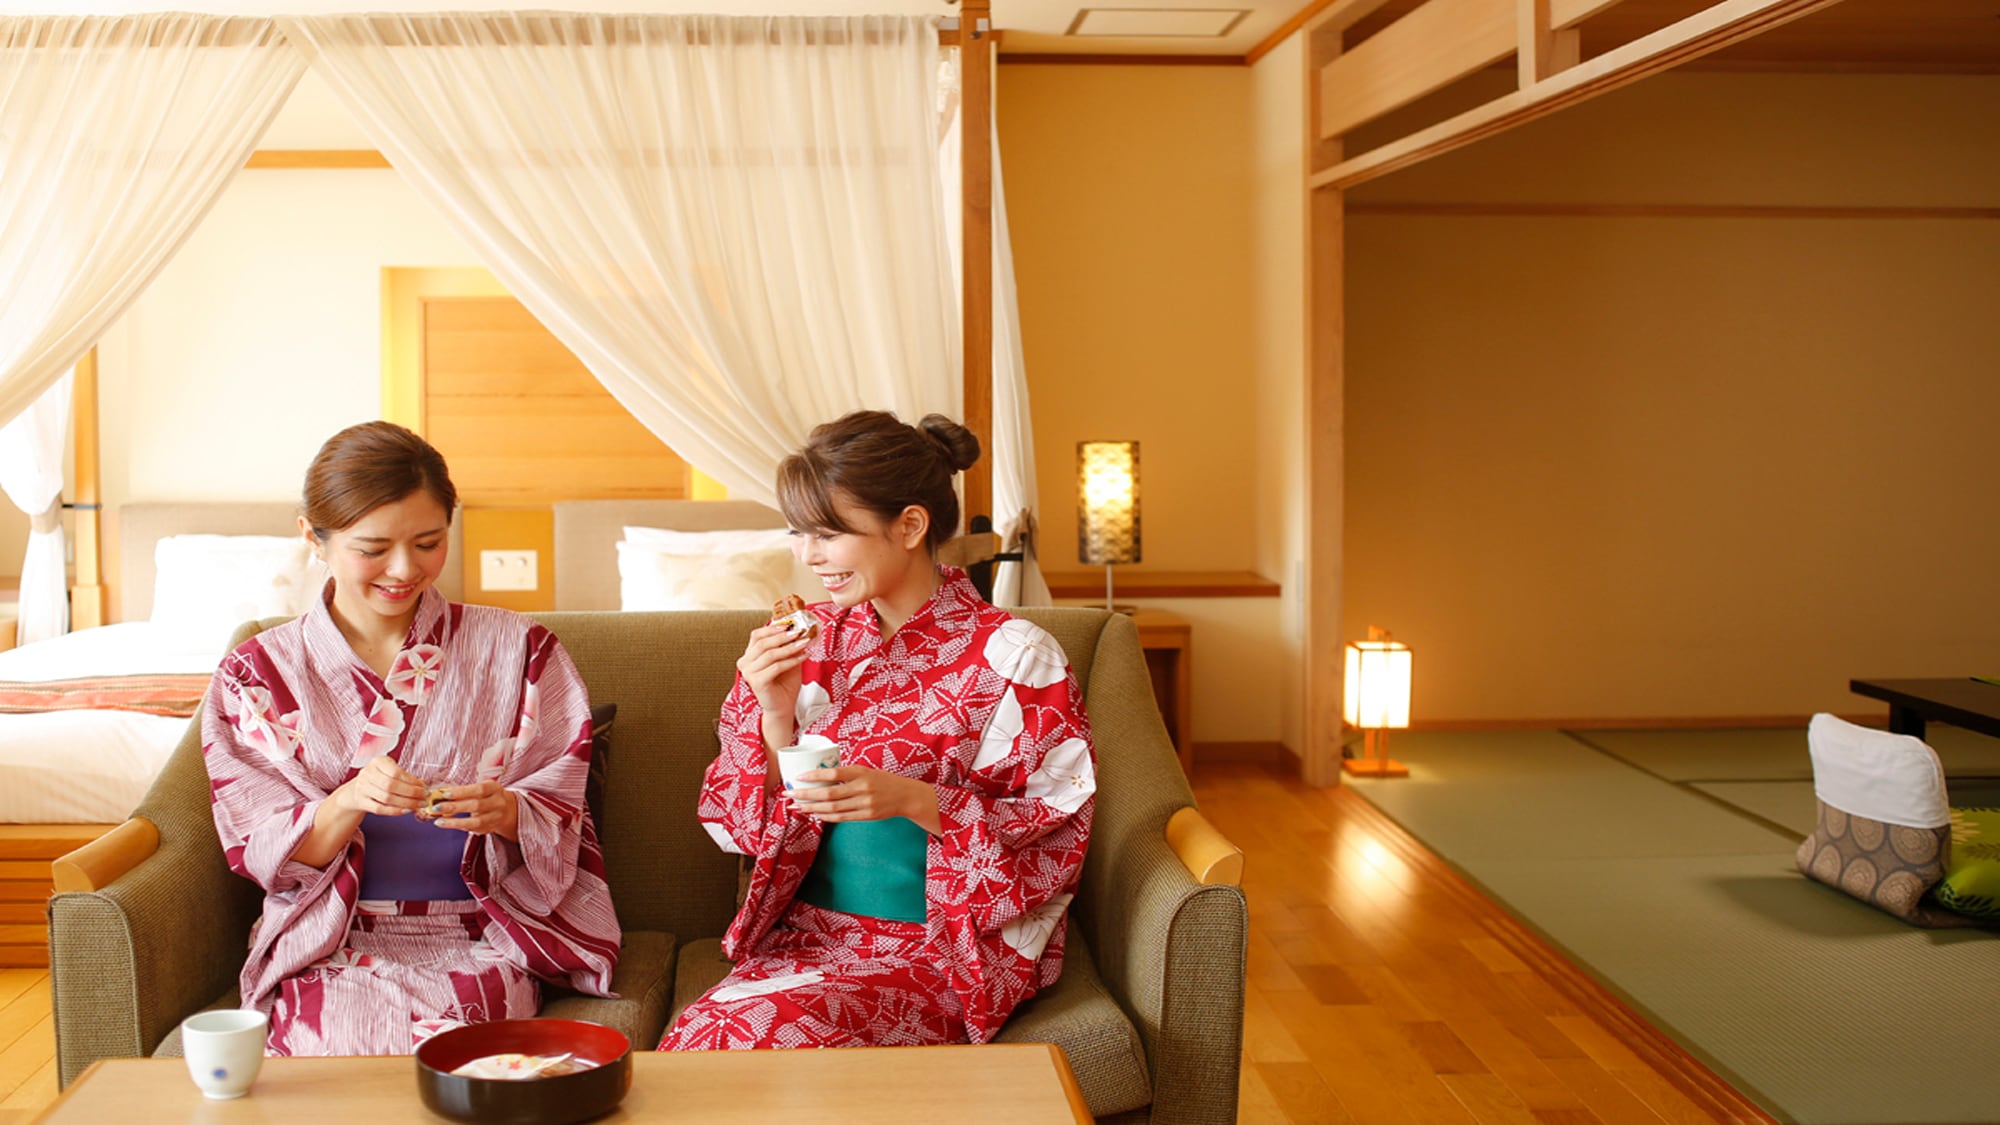 旅行和聊天的回忆也很活跃♪房间里准备了松山名产。